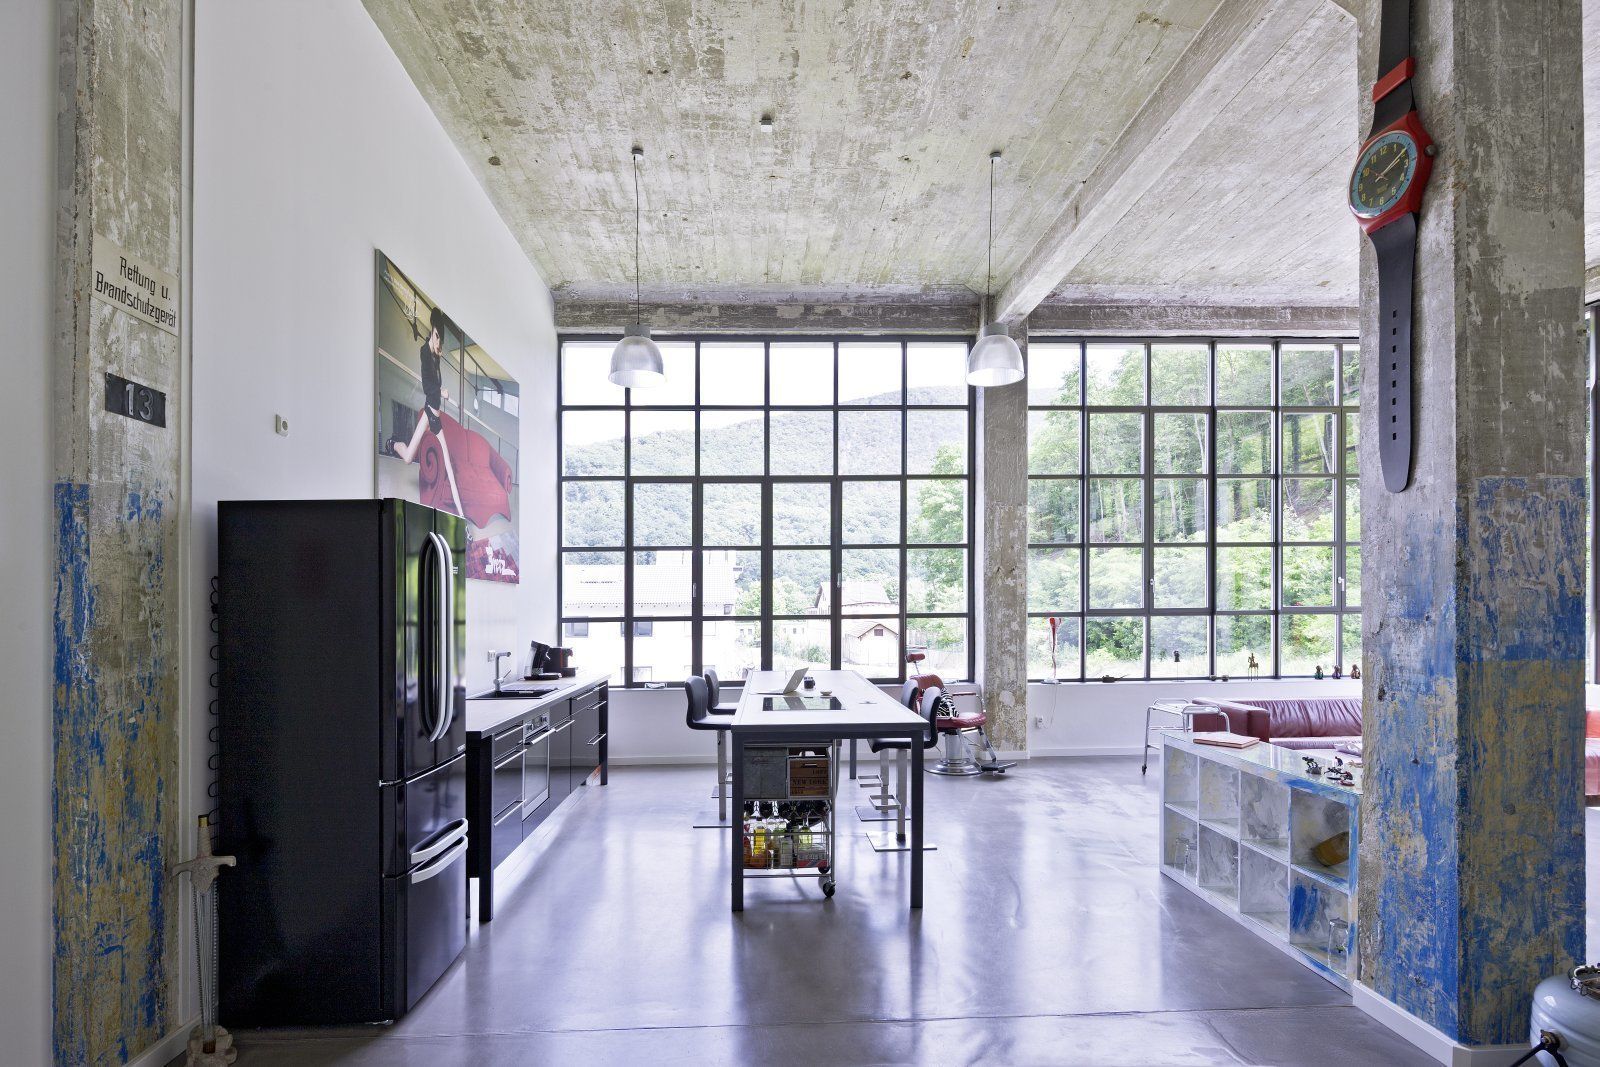 Lofts - Tuchfabrik, Hauser - Architektur Hauser - Architektur مطبخ